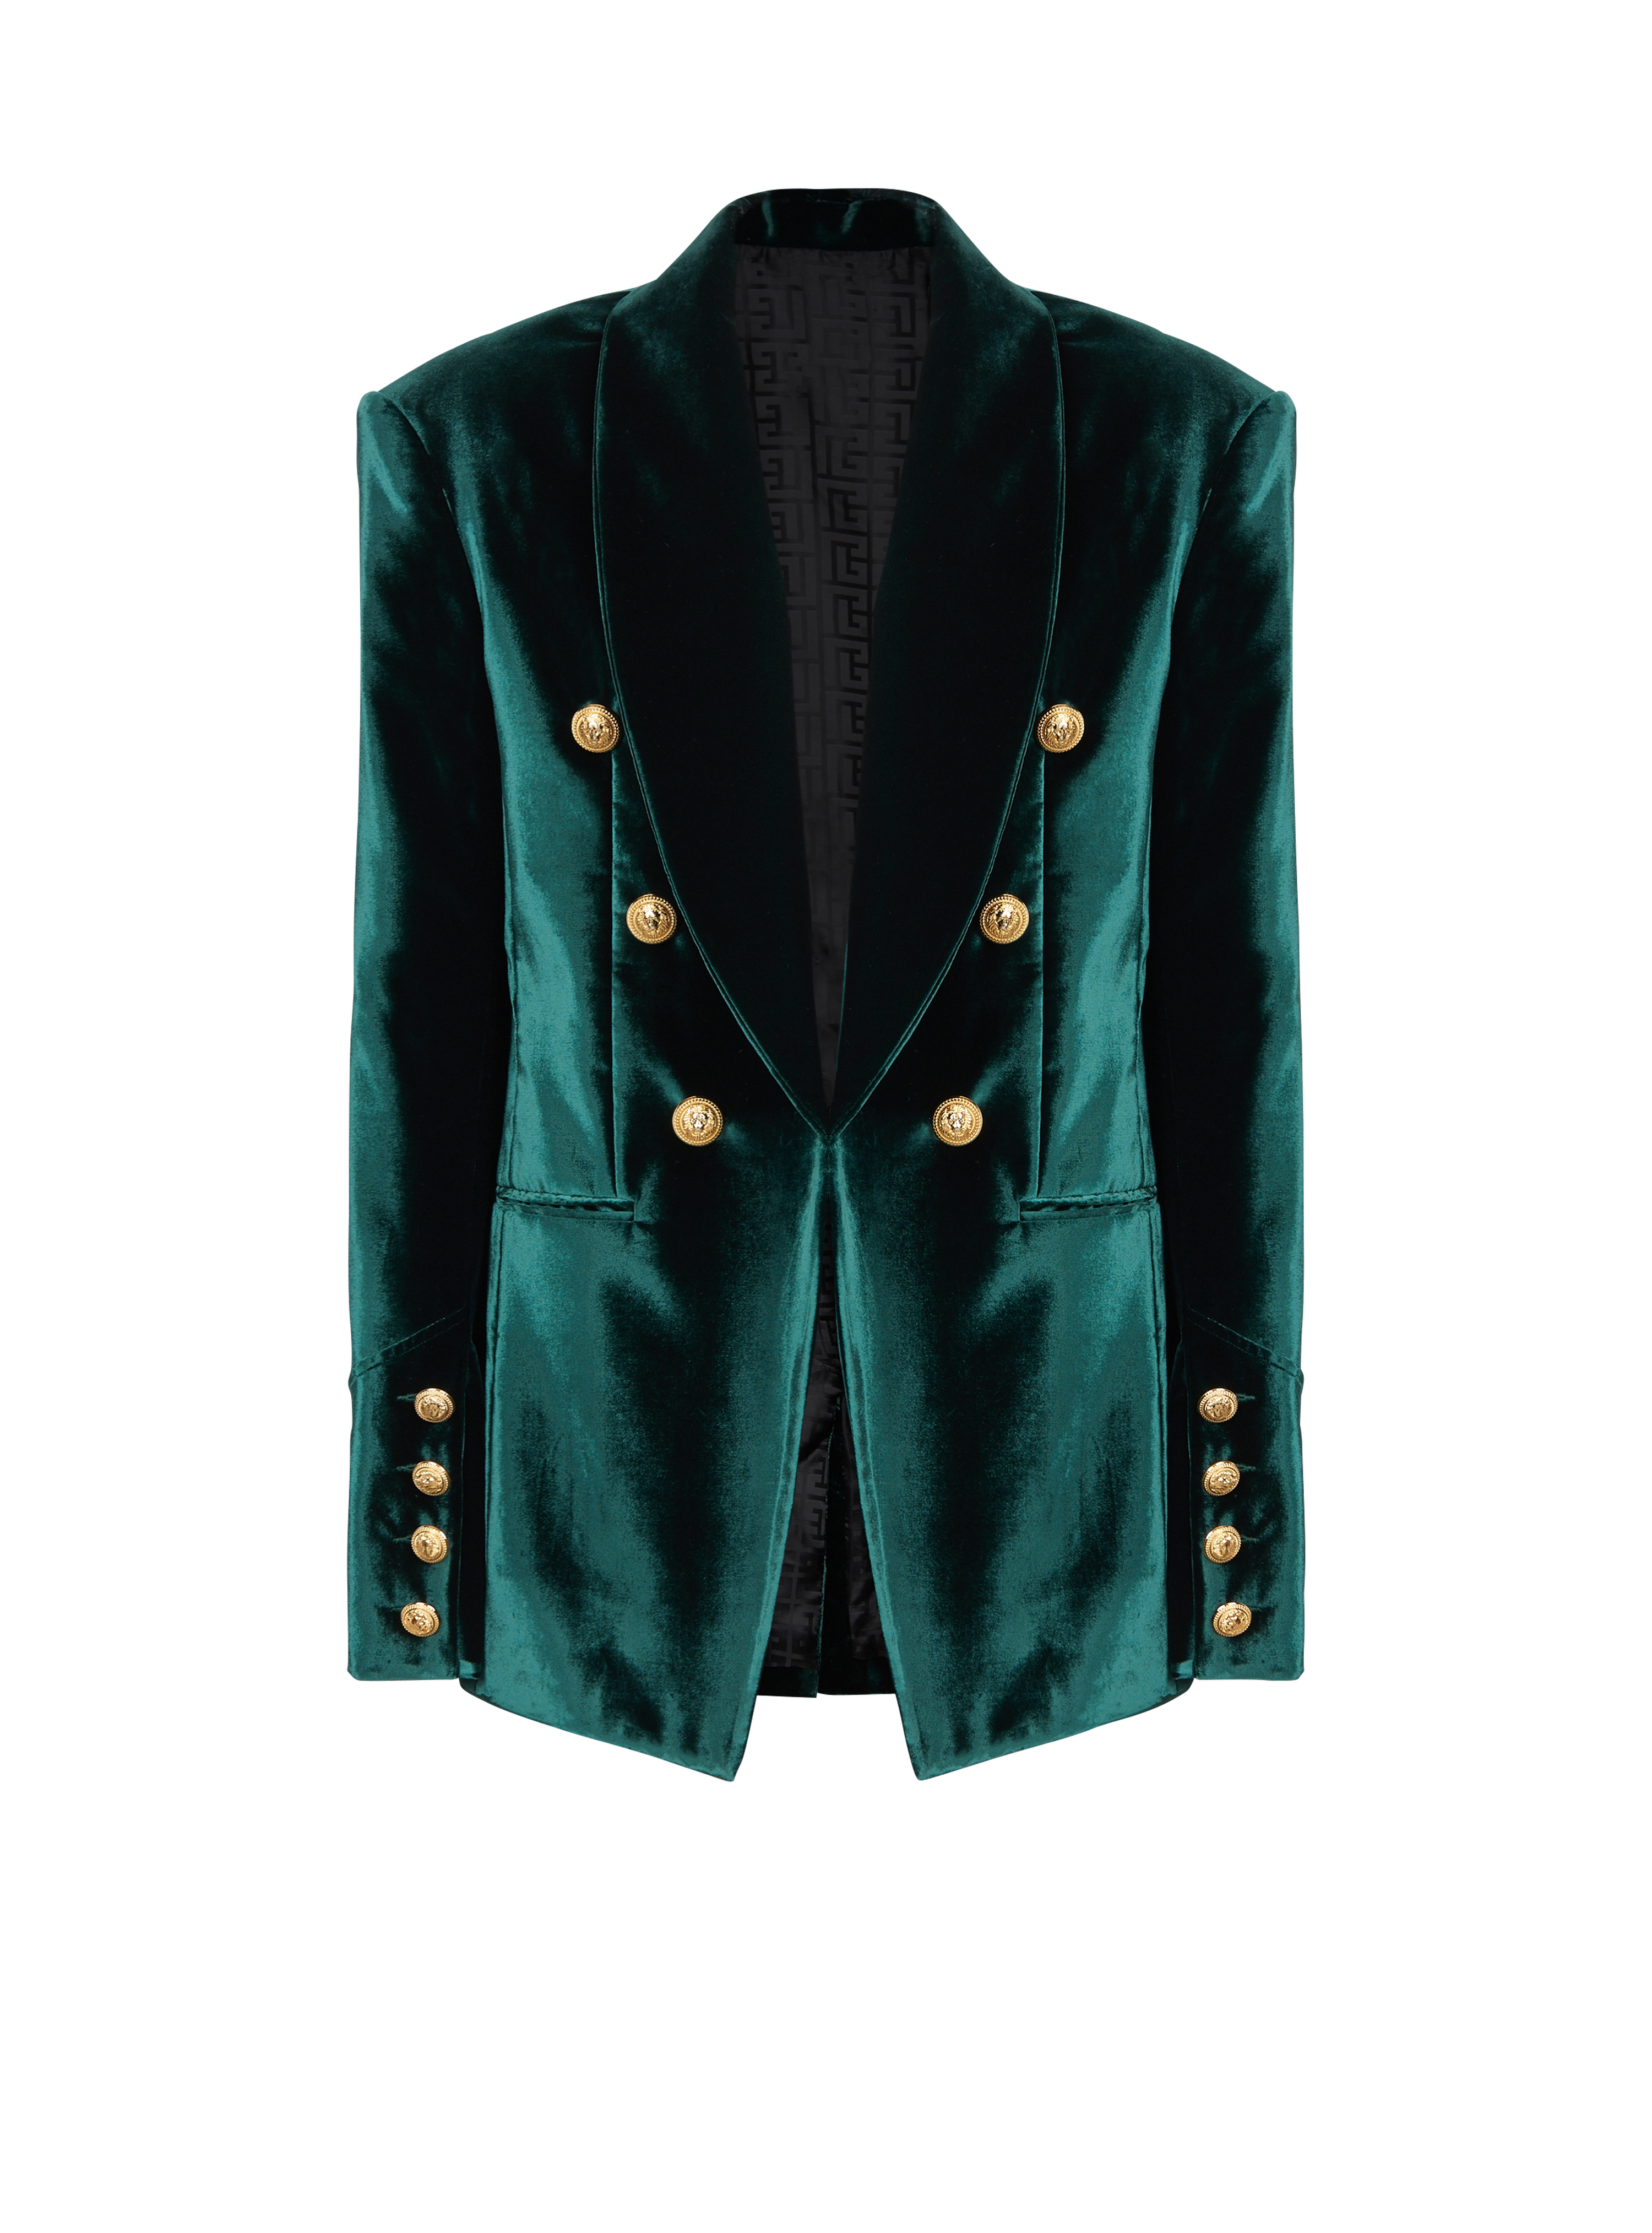 Velvet blazer with monogram lining, green